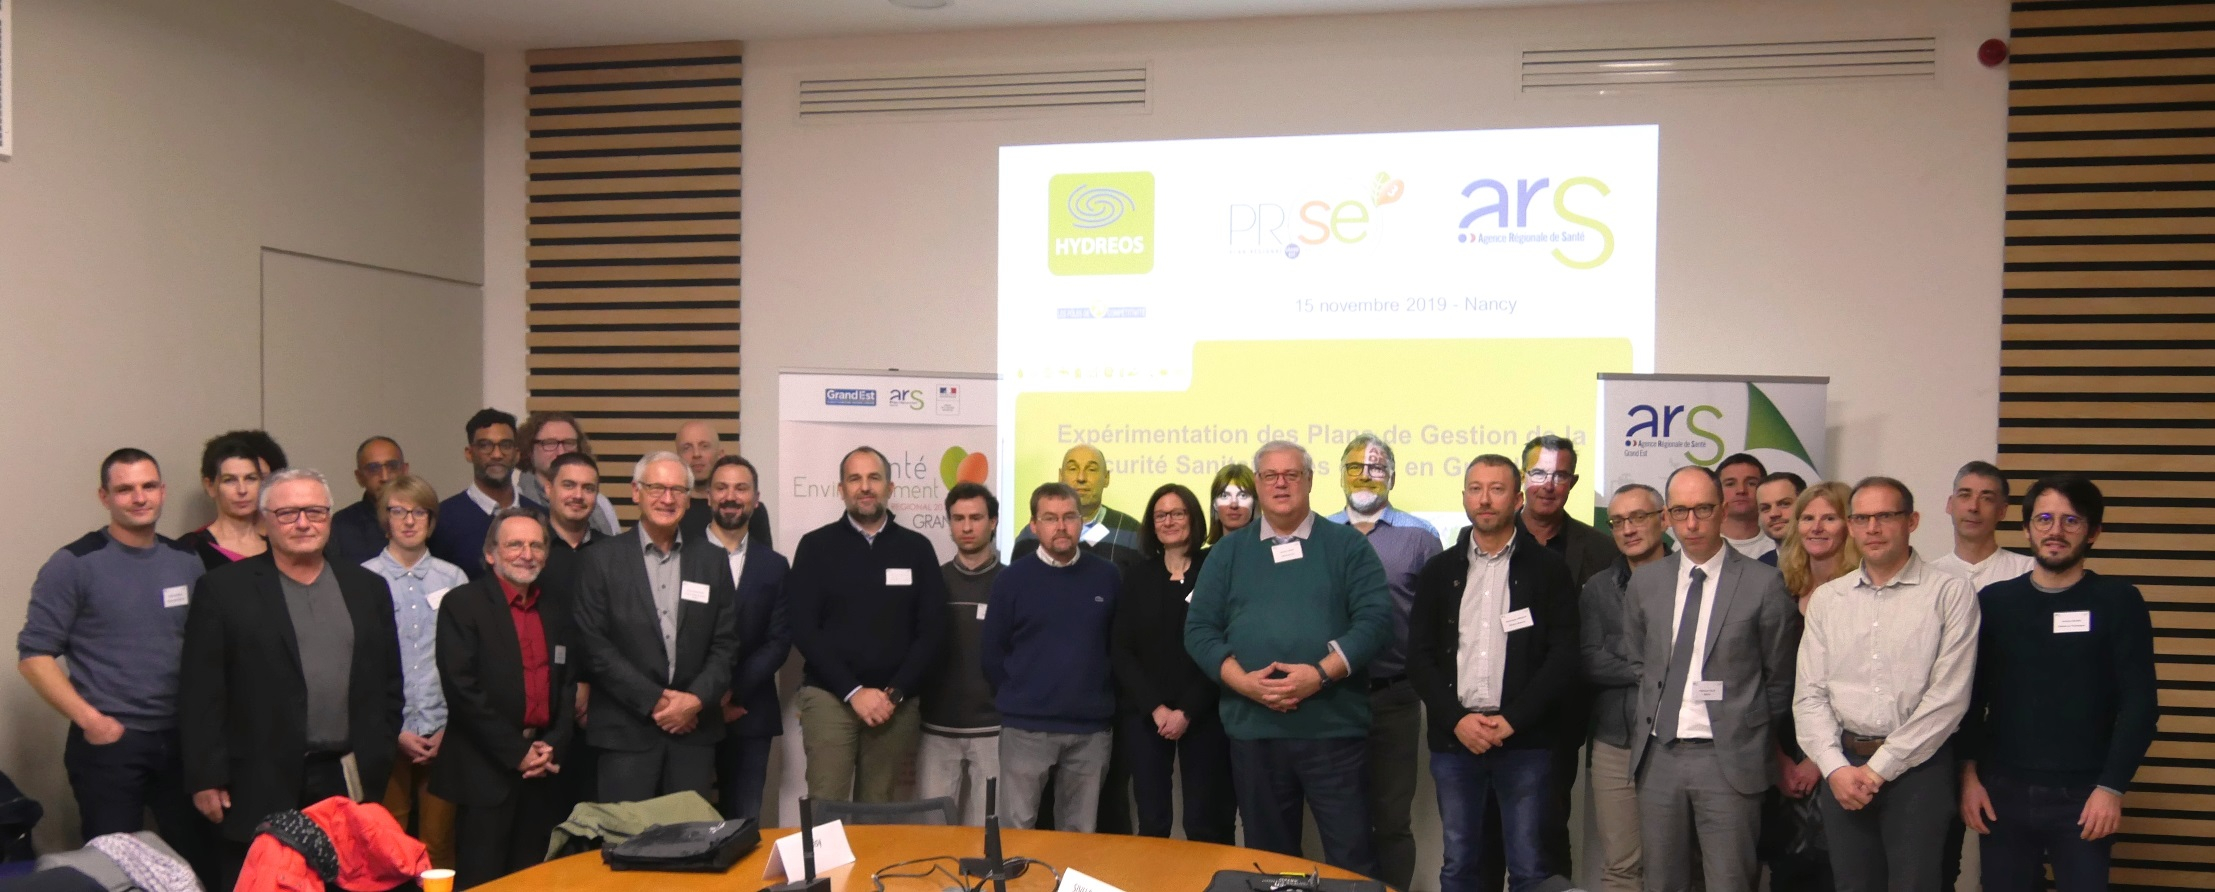 PGSSE-15.11.2019 - participants réunion charte Grand Est